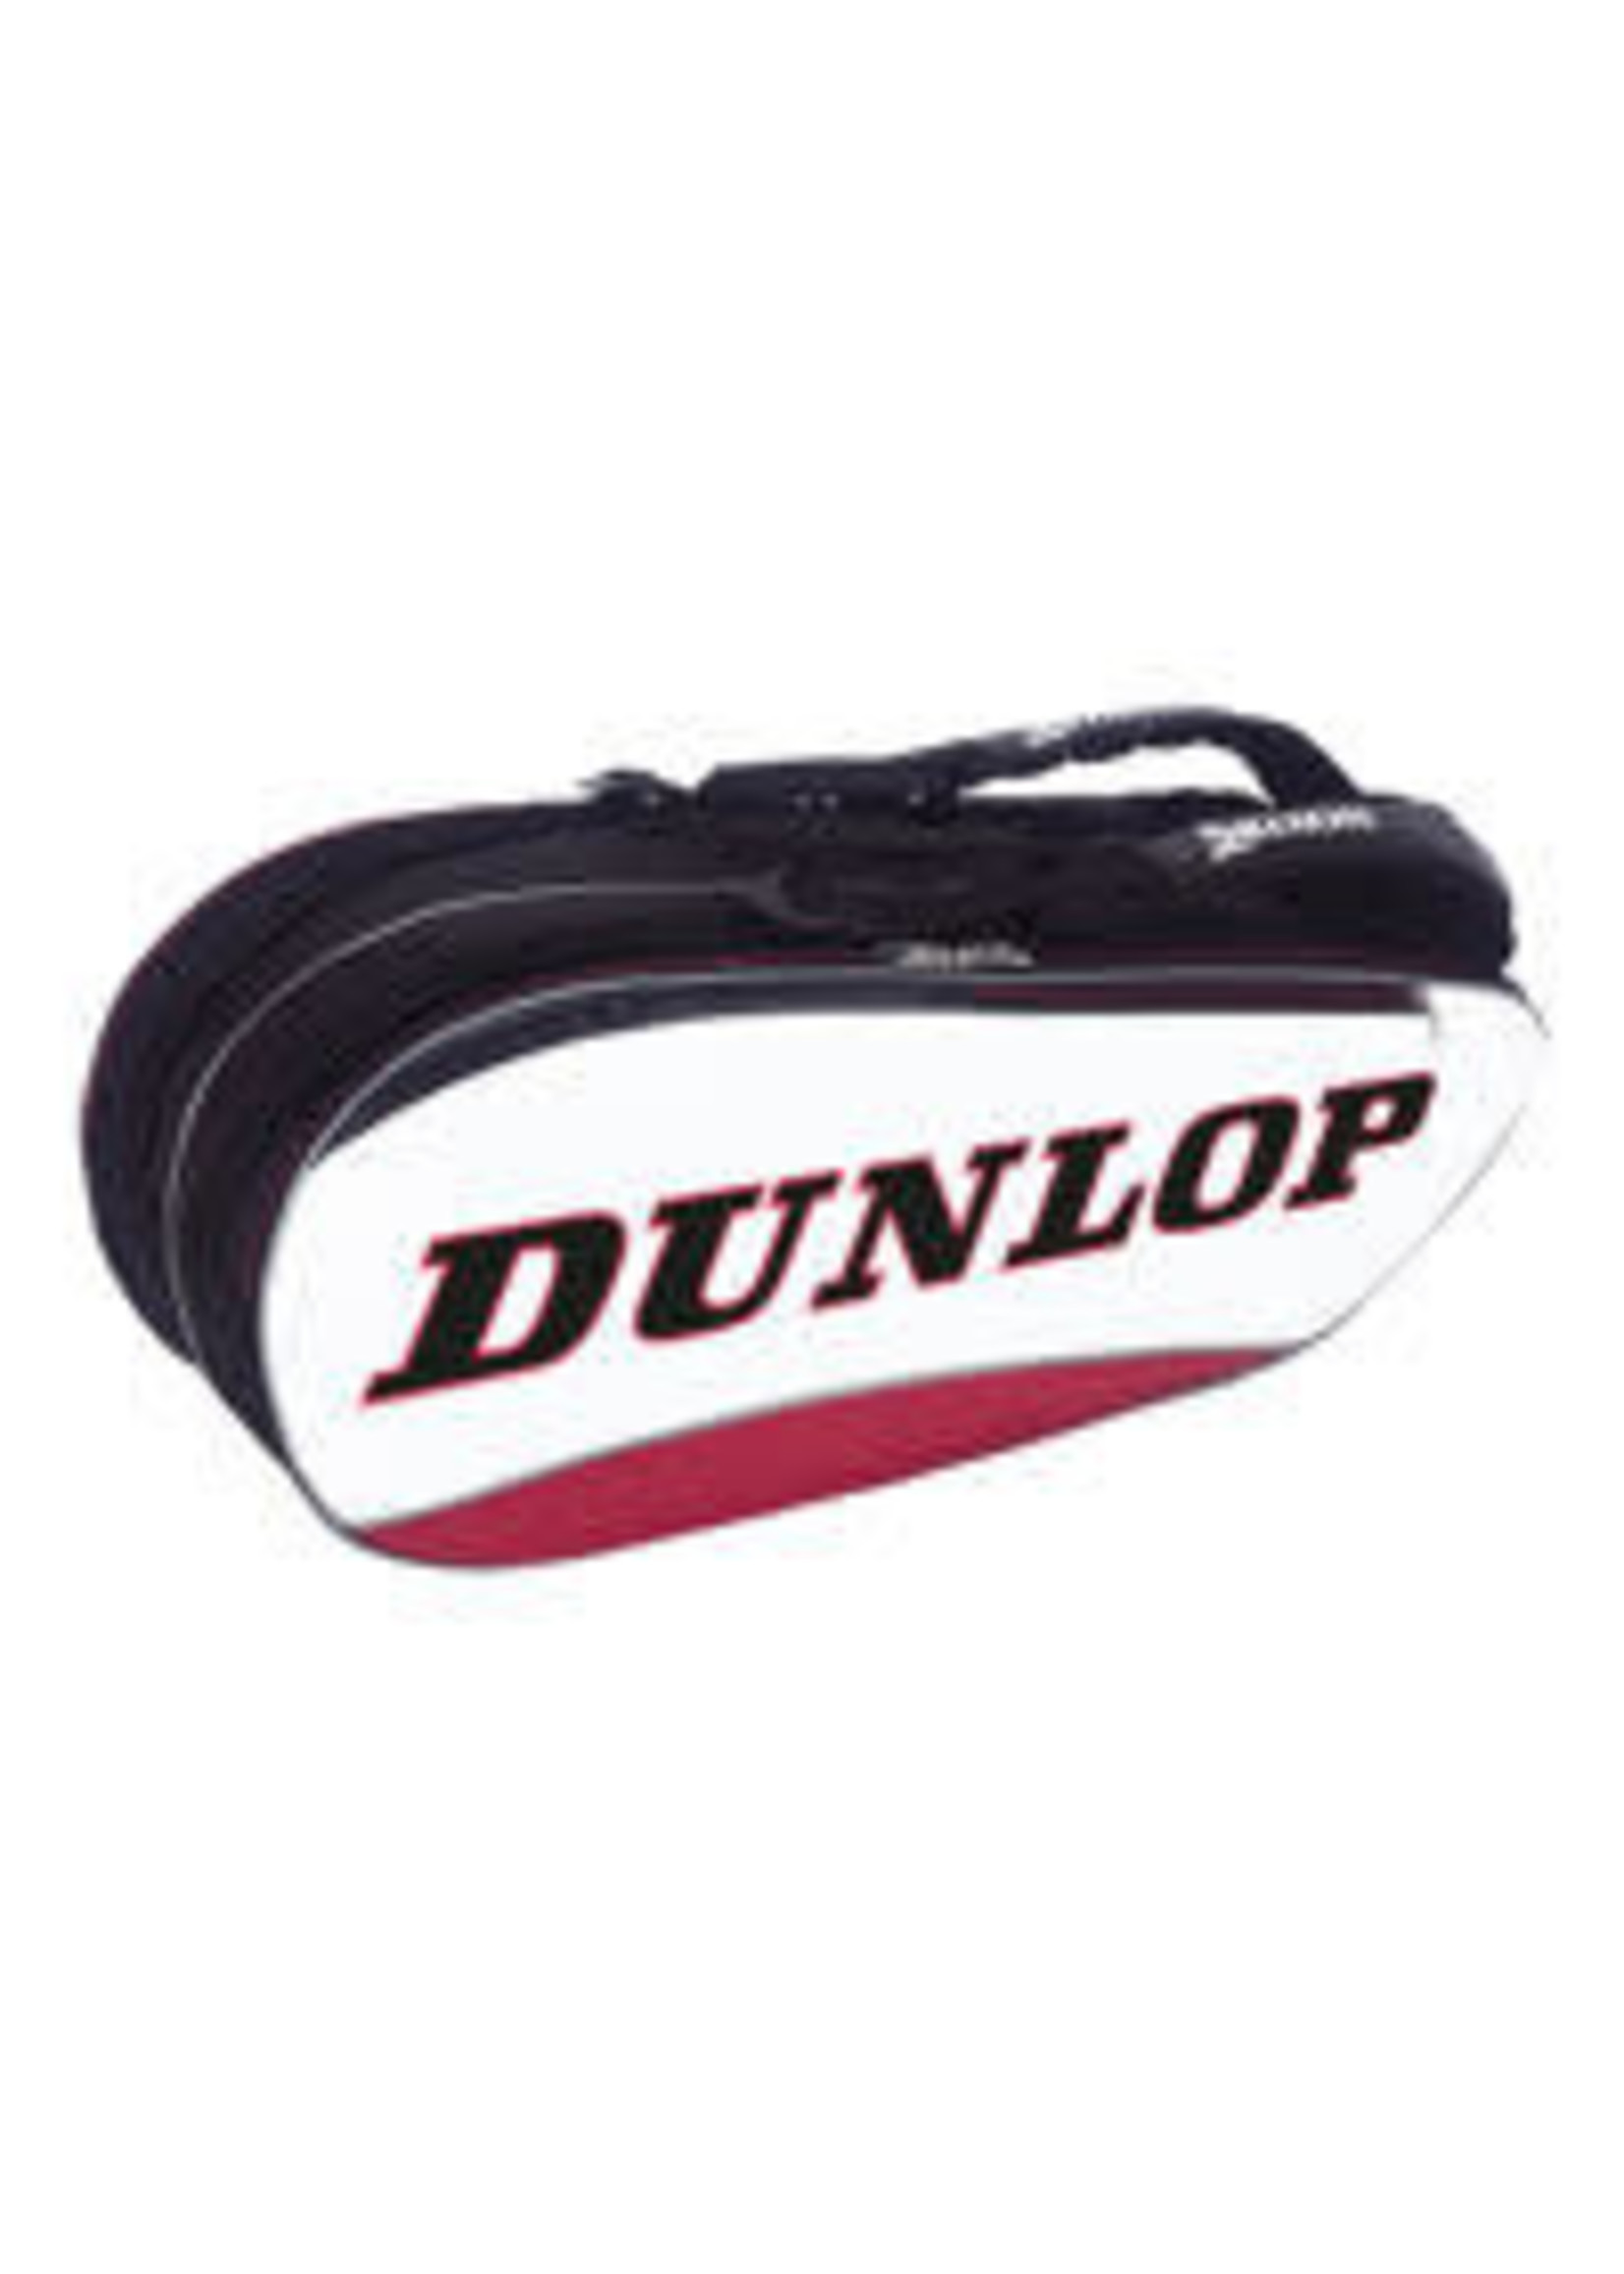 Dunlop Srixon Dunlop Srixon Thermo 8 Racket Bag (2018) White/Black/Red